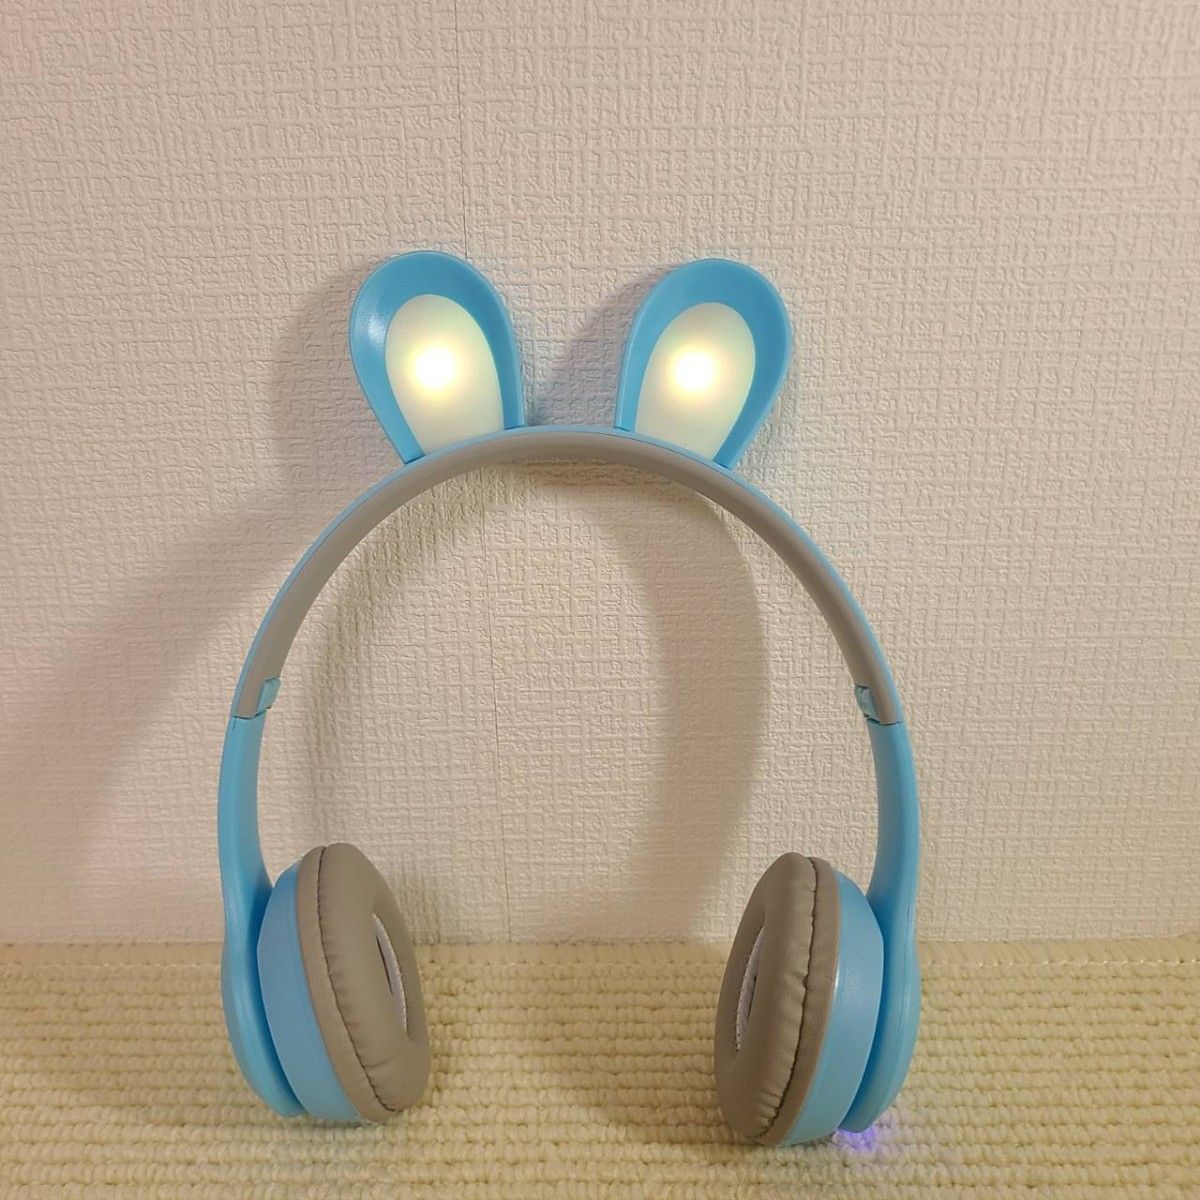 【新品未使用】うさ耳ワイヤレスヘッドホン Bluetooth マイク付き ハンズフリー通話 音楽 ブルー